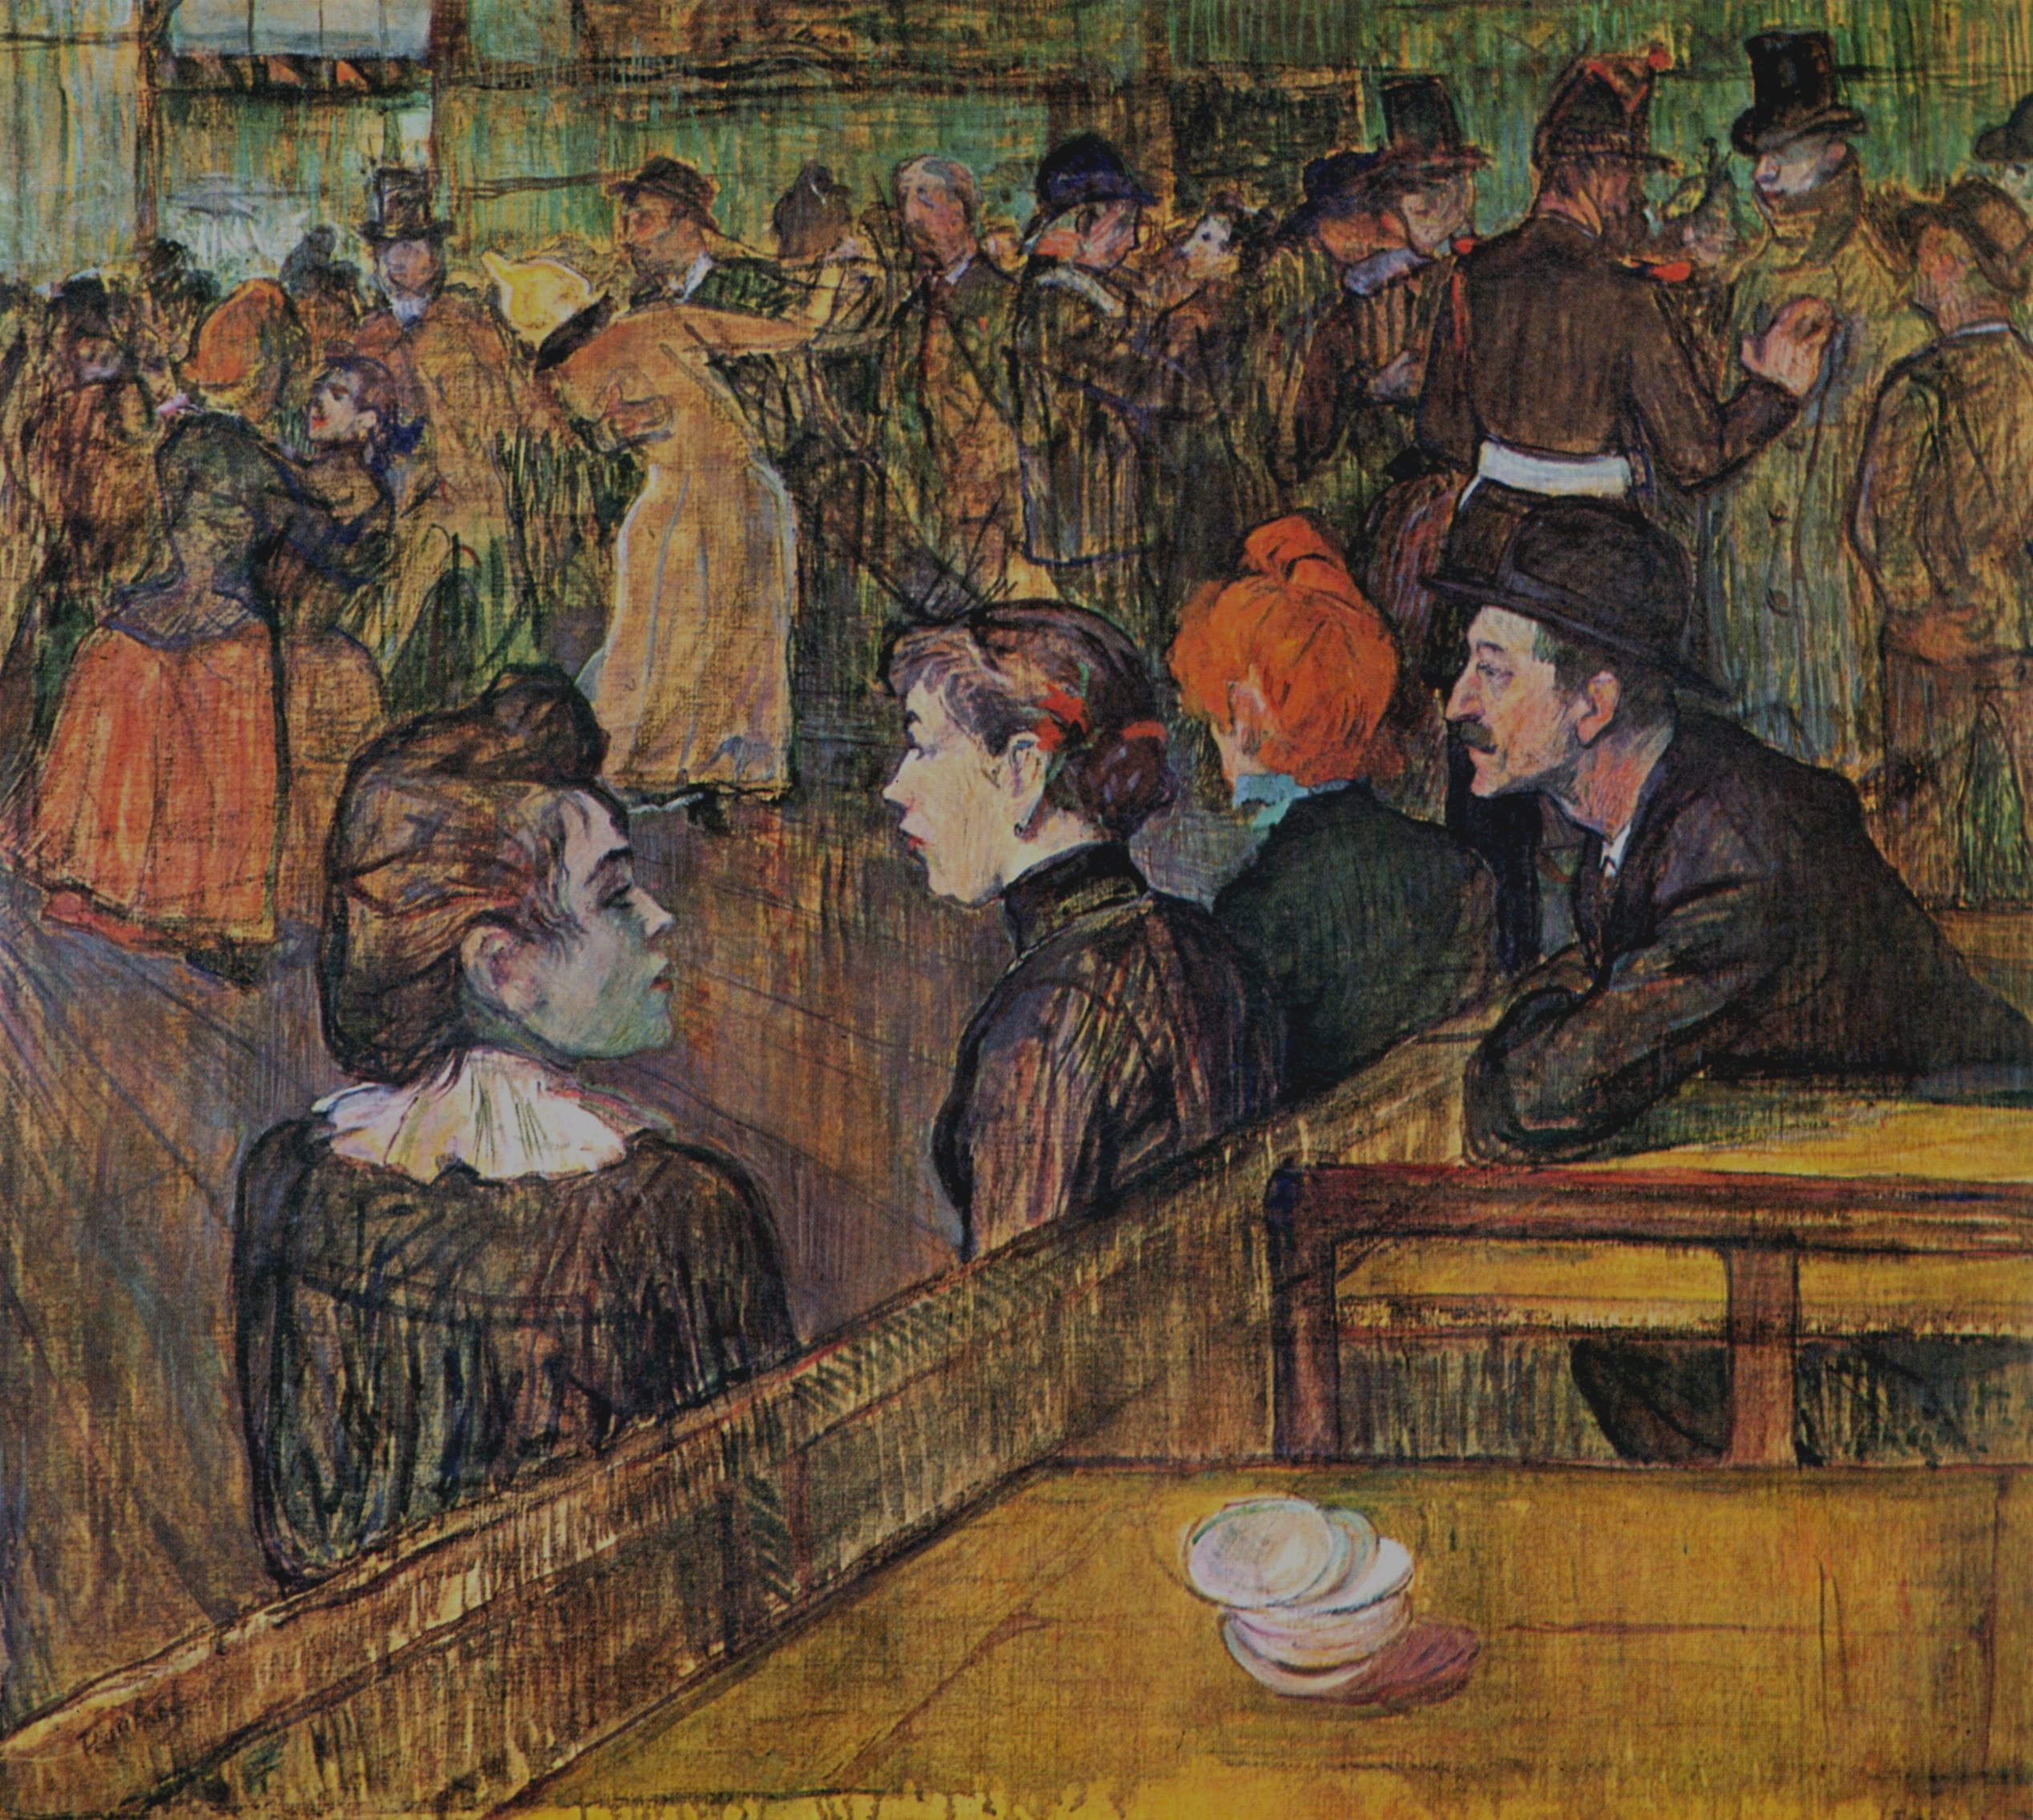 煎饼磨坊的舞会 by 亨利 劳特累克 - 1889 - 88.5 x 101.3 cm 芝加哥藝術博物館